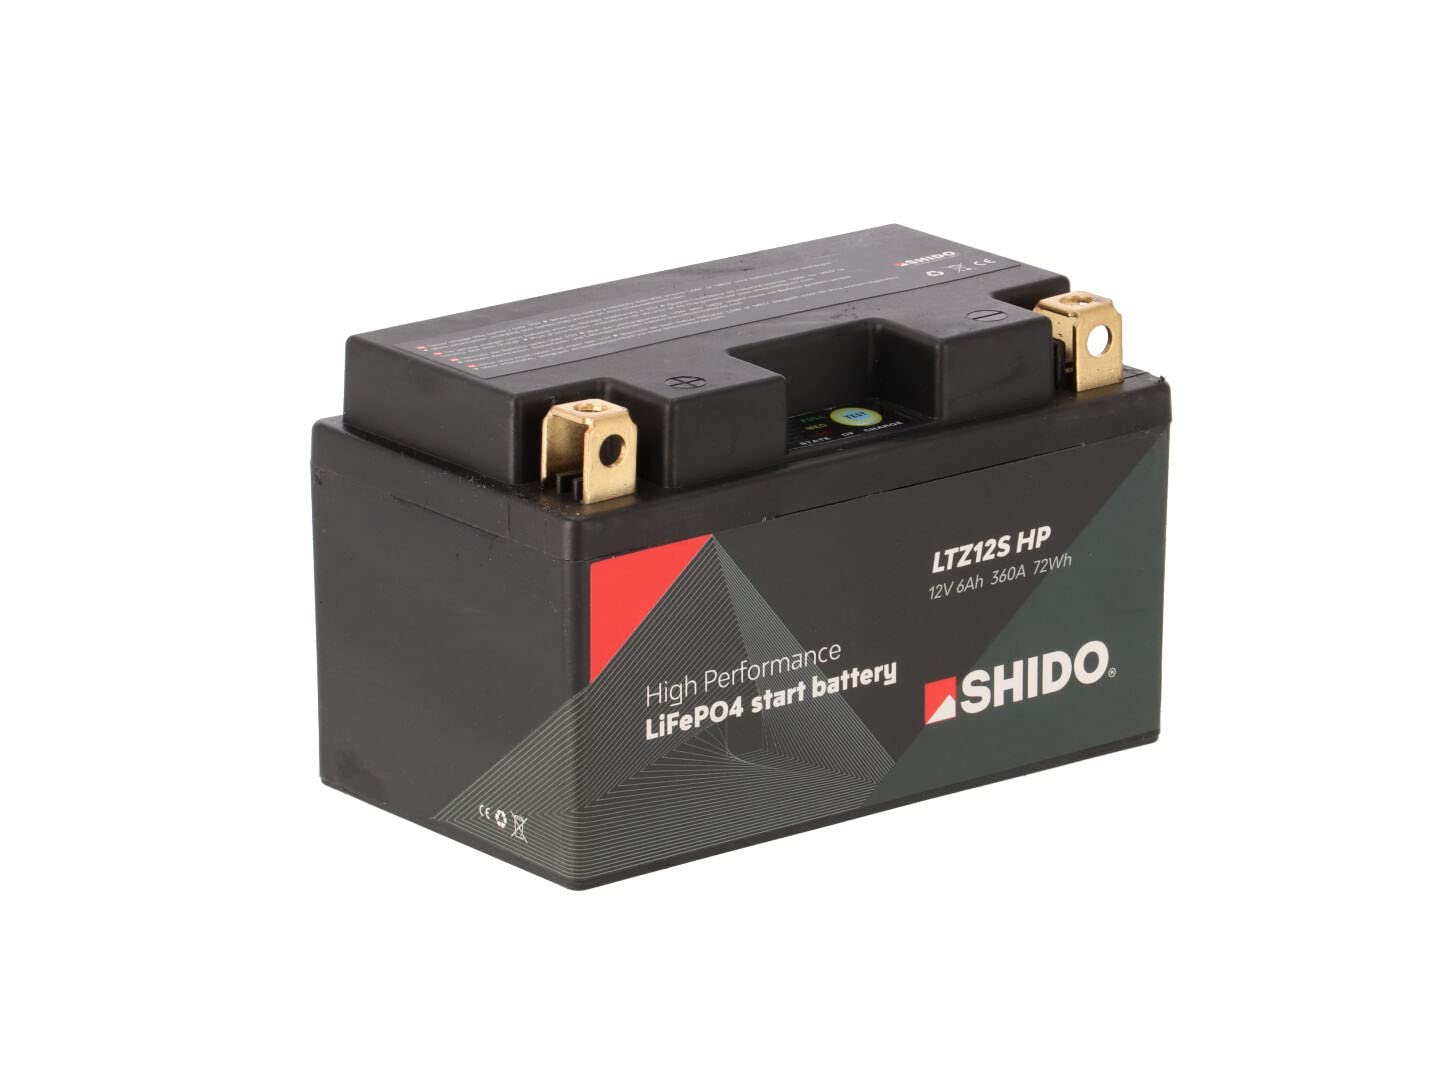 SHIDO LTZ12S HP Lithium Ion von SHIDO